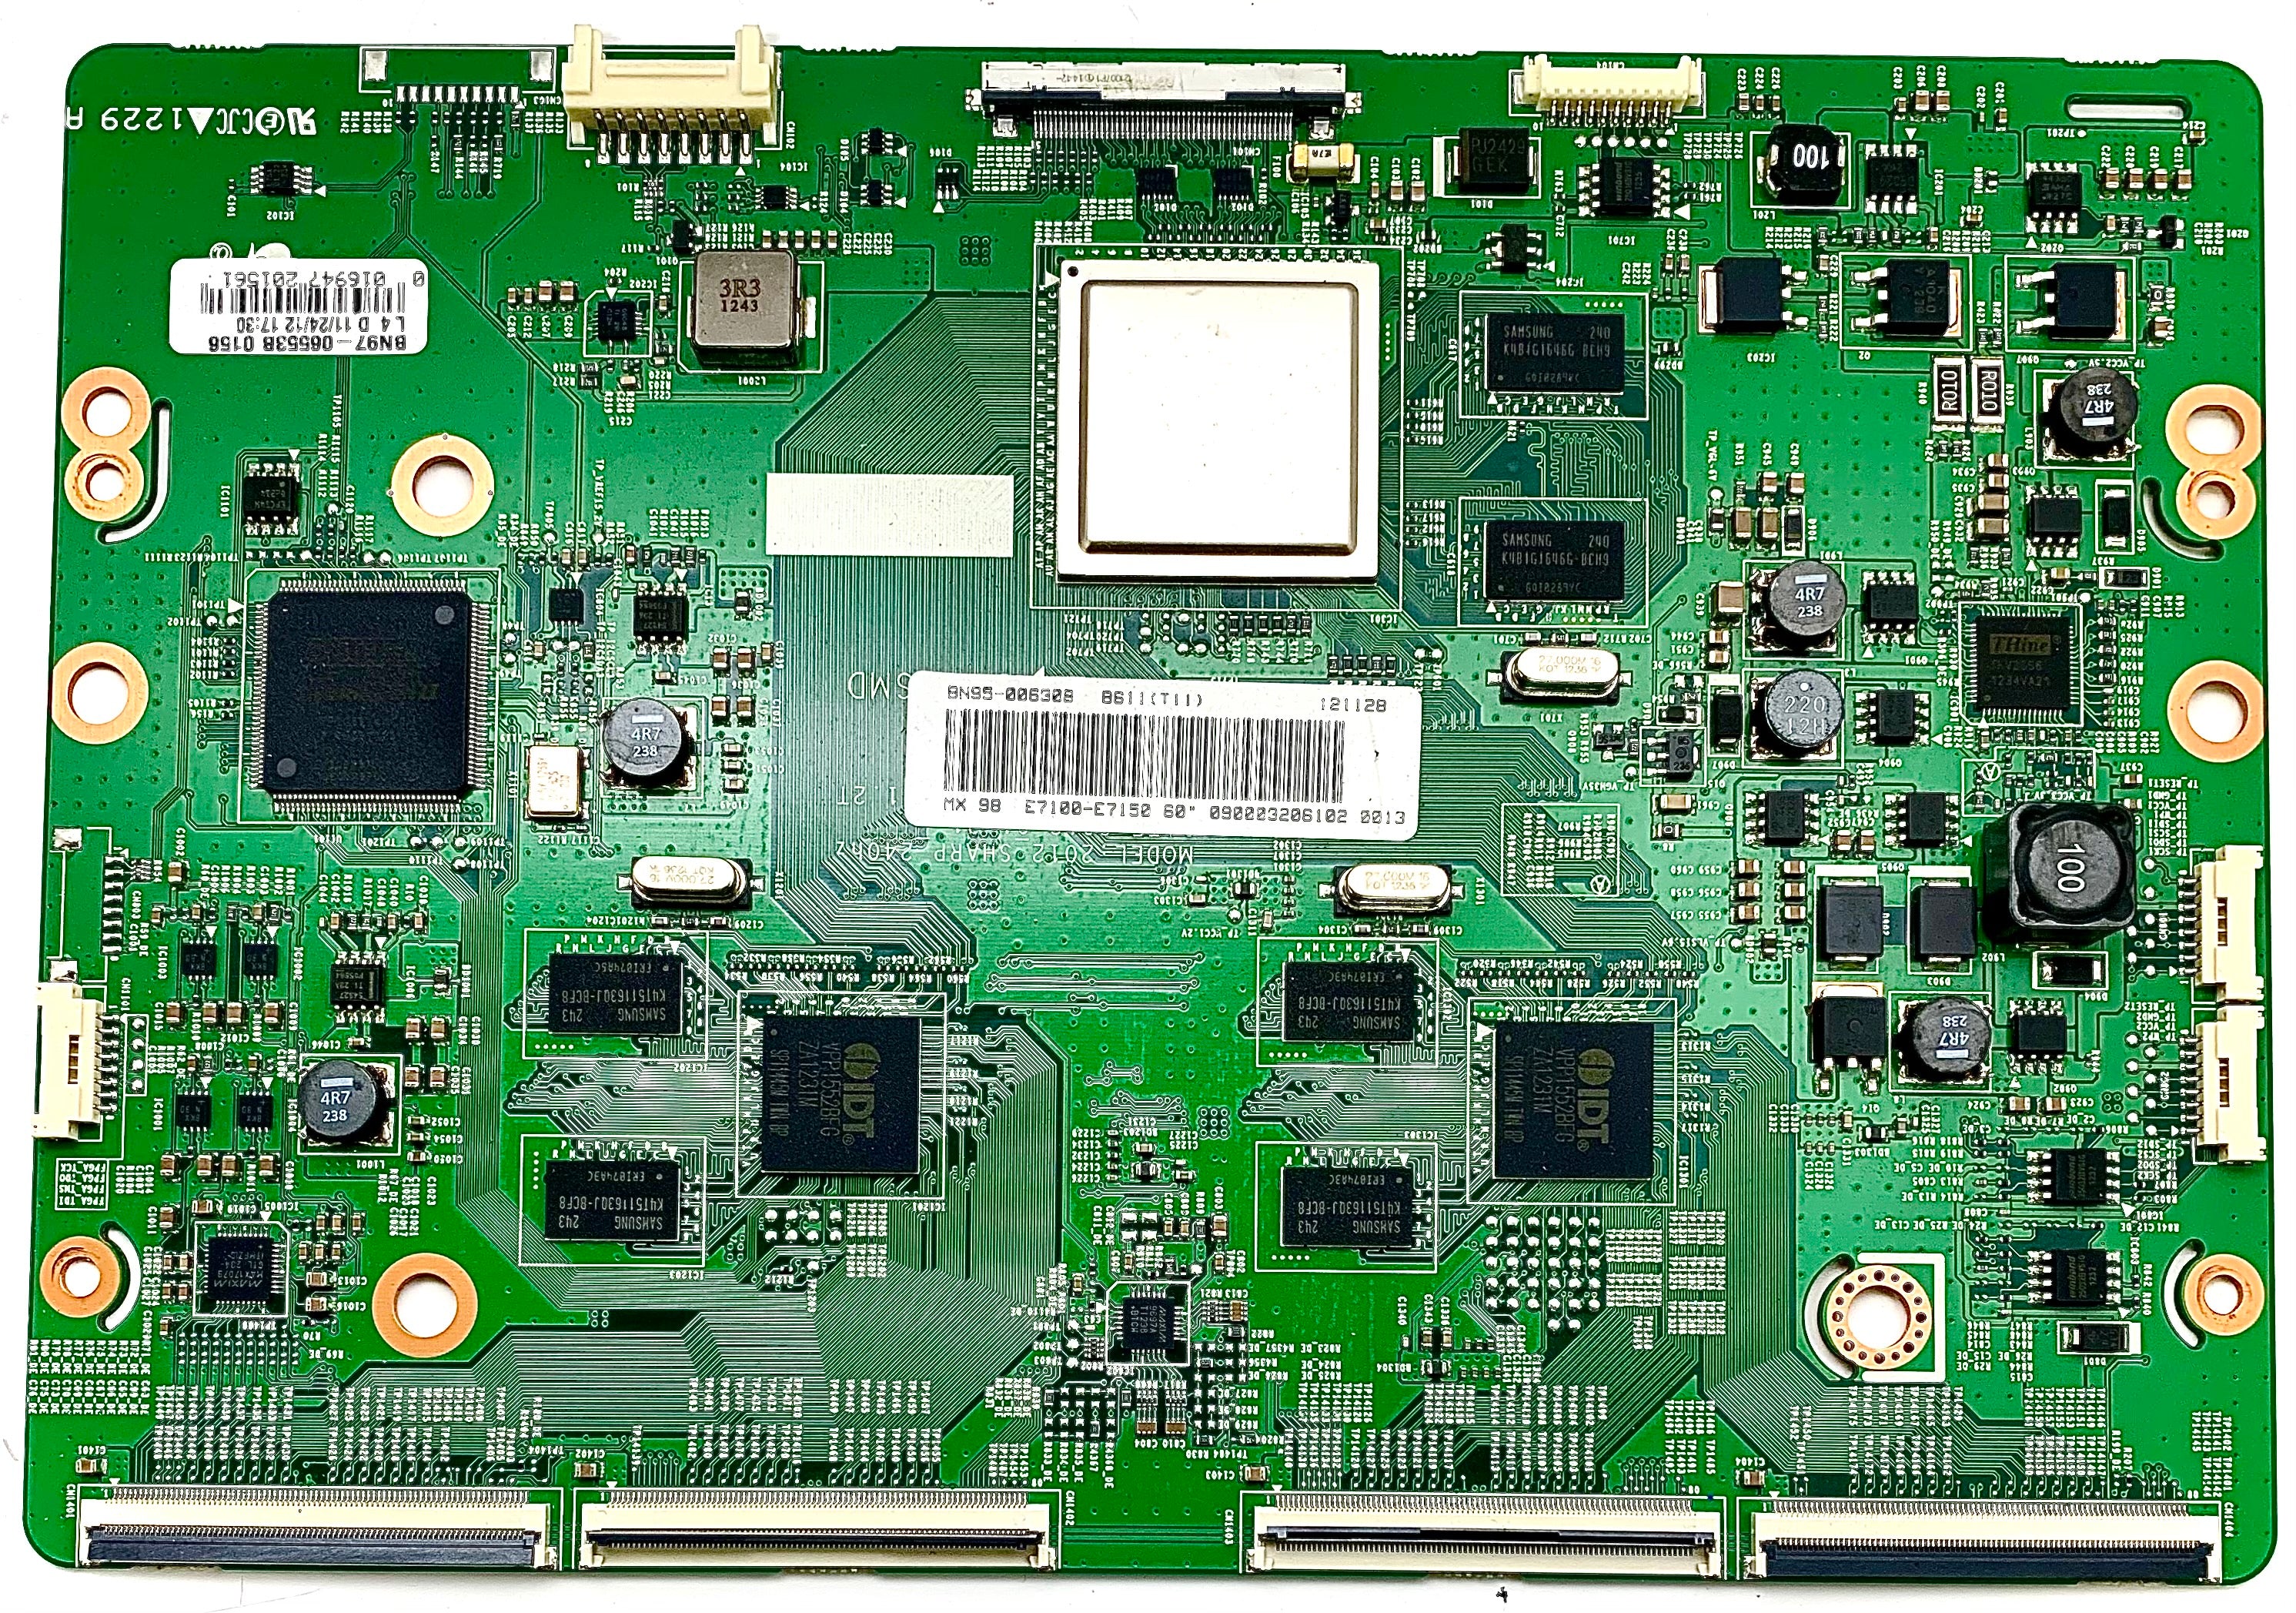 Samsung BN95-00630B (BN97-06553B, BN41-01817A) T-Con Board